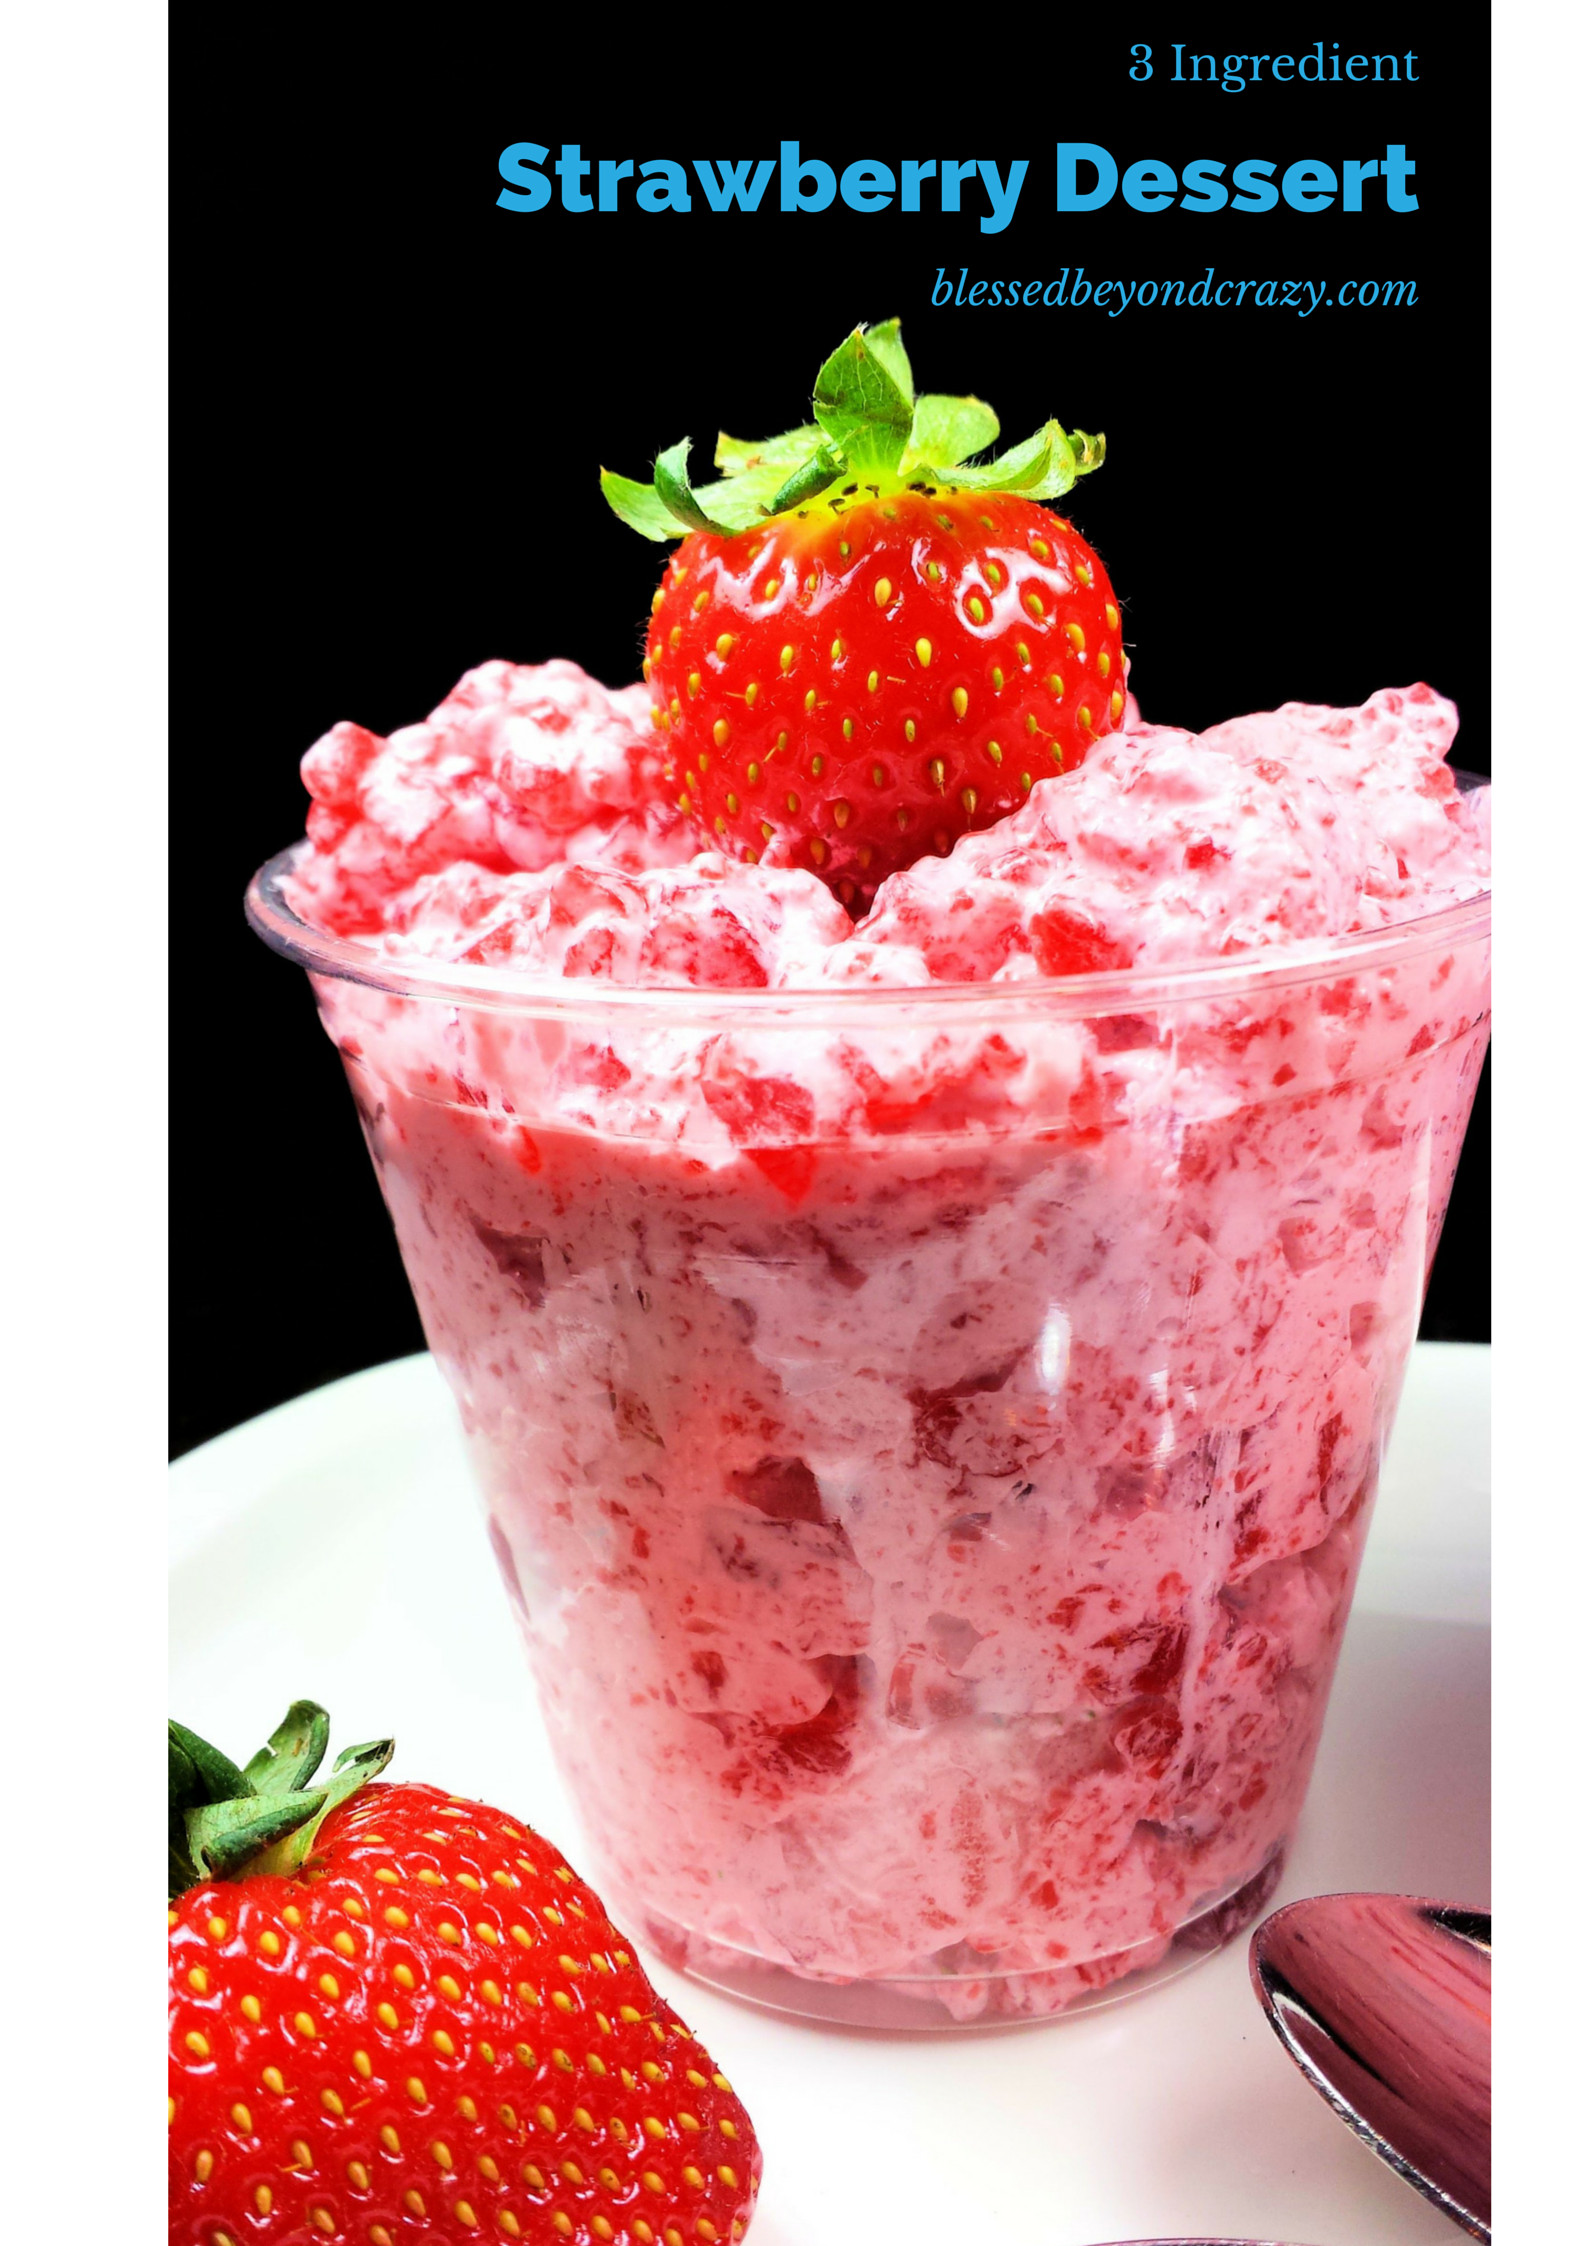 Strawberry Dessert Ideas
 3 Ingre nt Strawberry Dessert